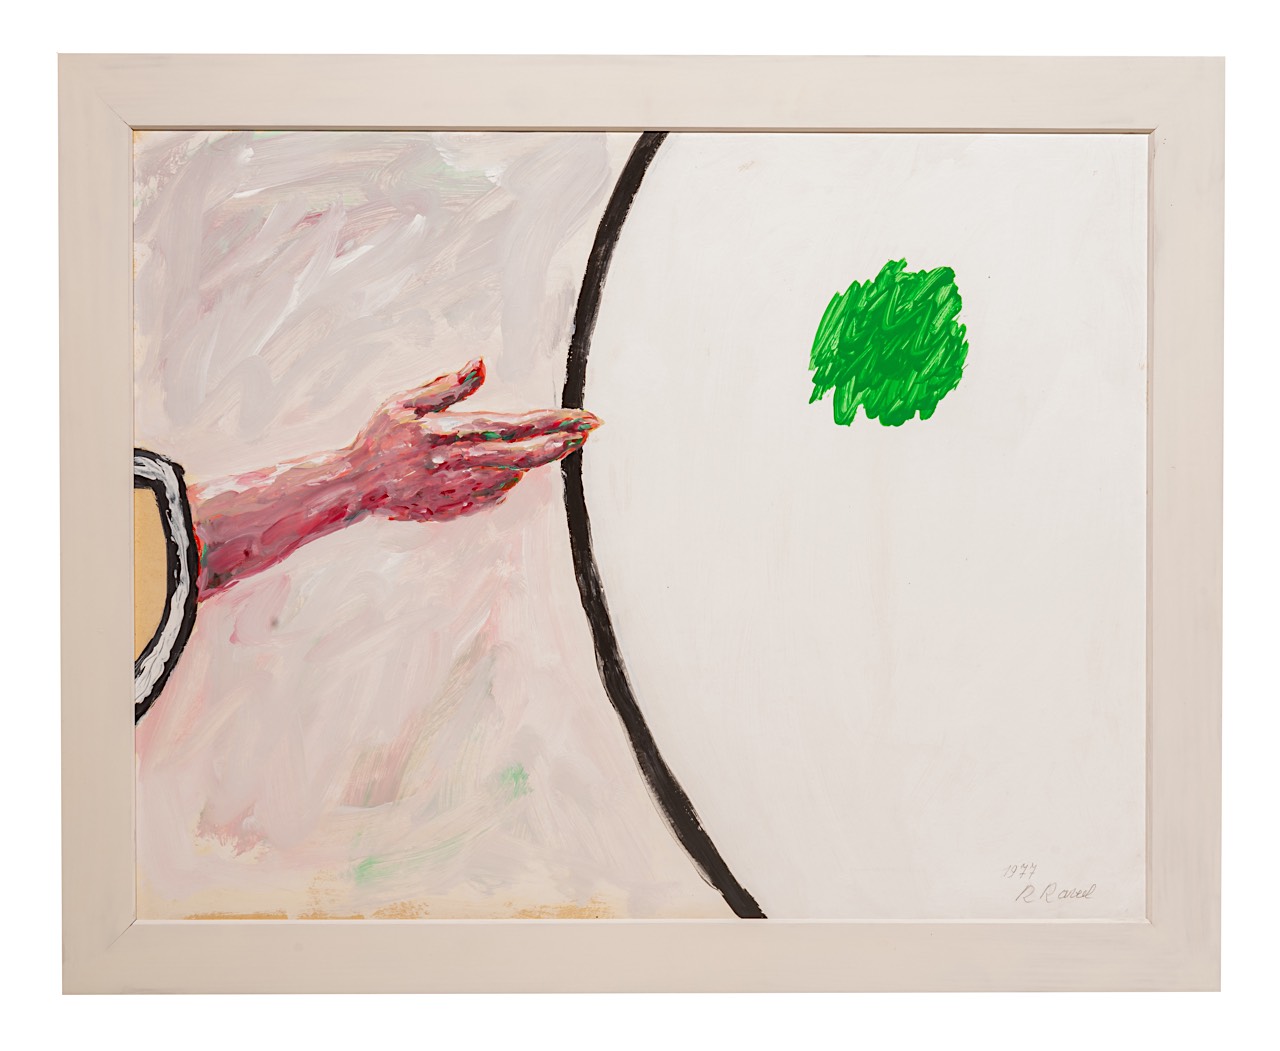 Roger Raveel (1921-2013), 'Een hand met een groene reflectie', 1977, acrylic on paper on canvas 57 x - Image 2 of 4